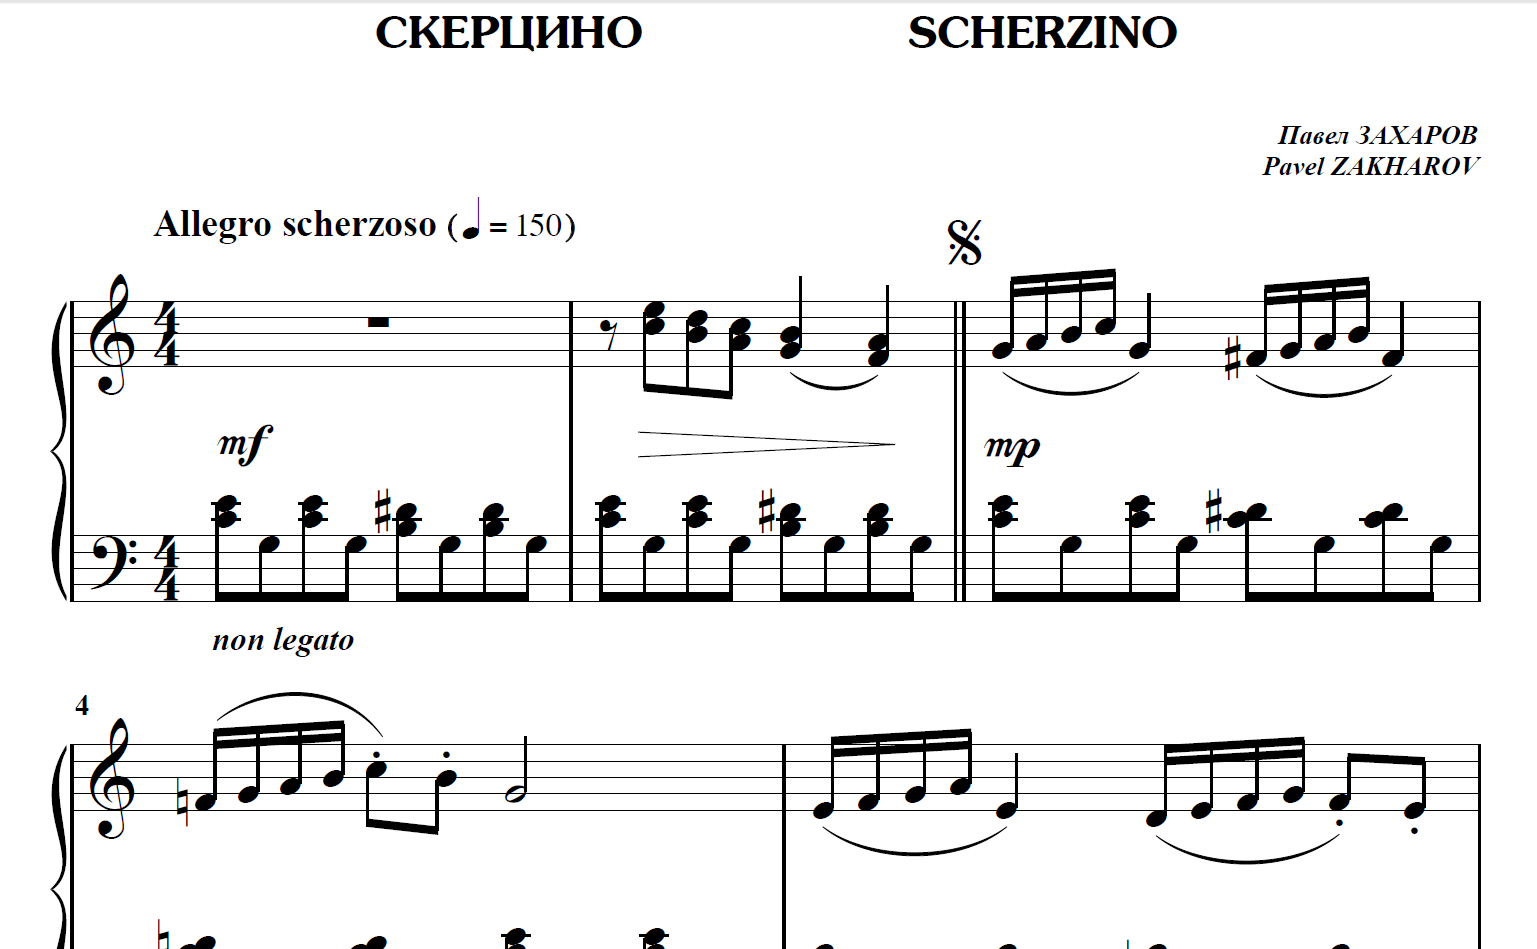 5s05 Scherzino, PAVEL ZAKHAROV / piano